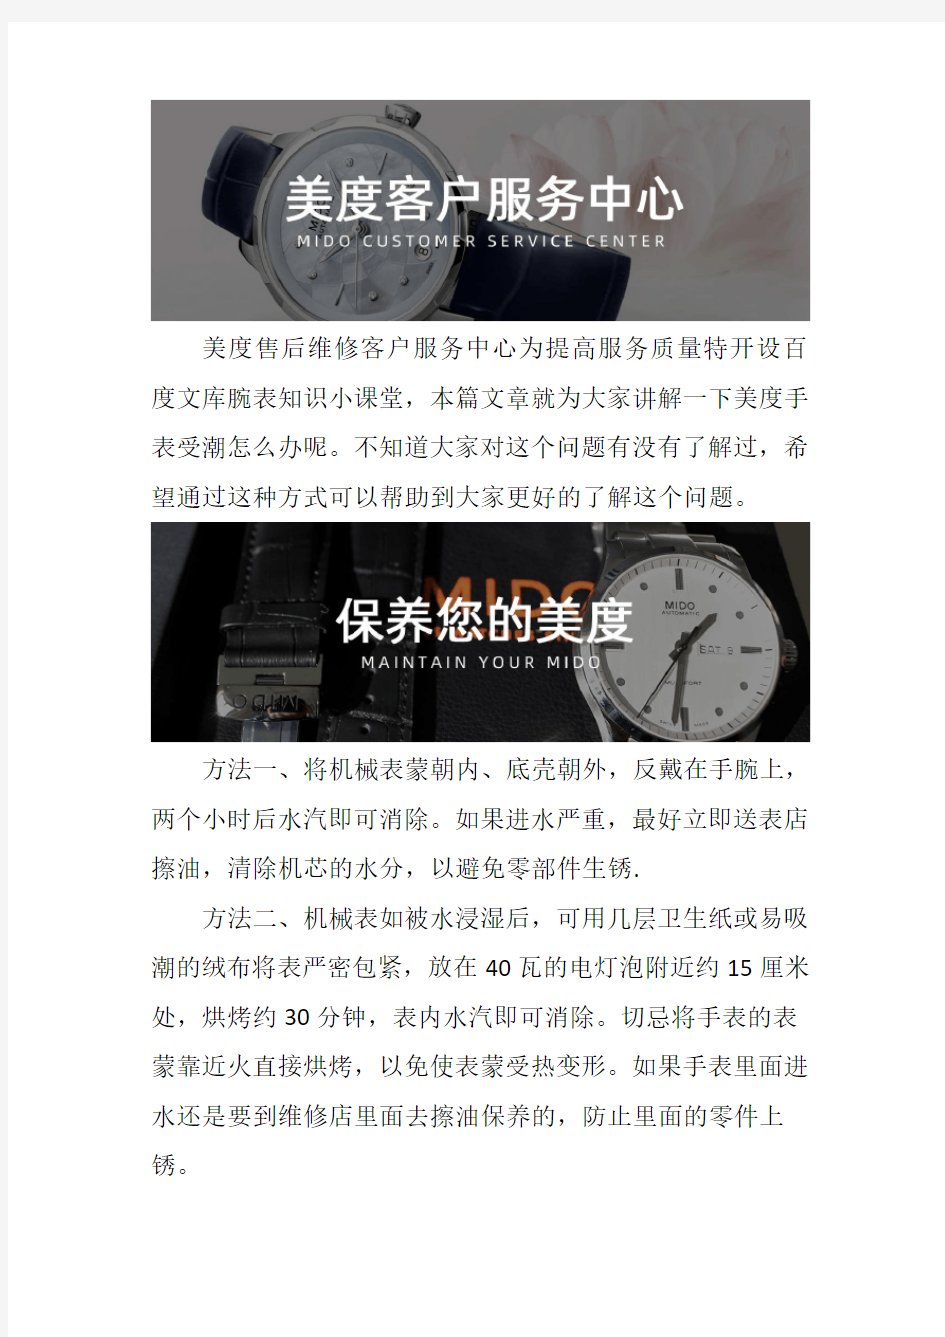 杭州美度手表售后维修服务中心--美度手表受潮怎么办呢